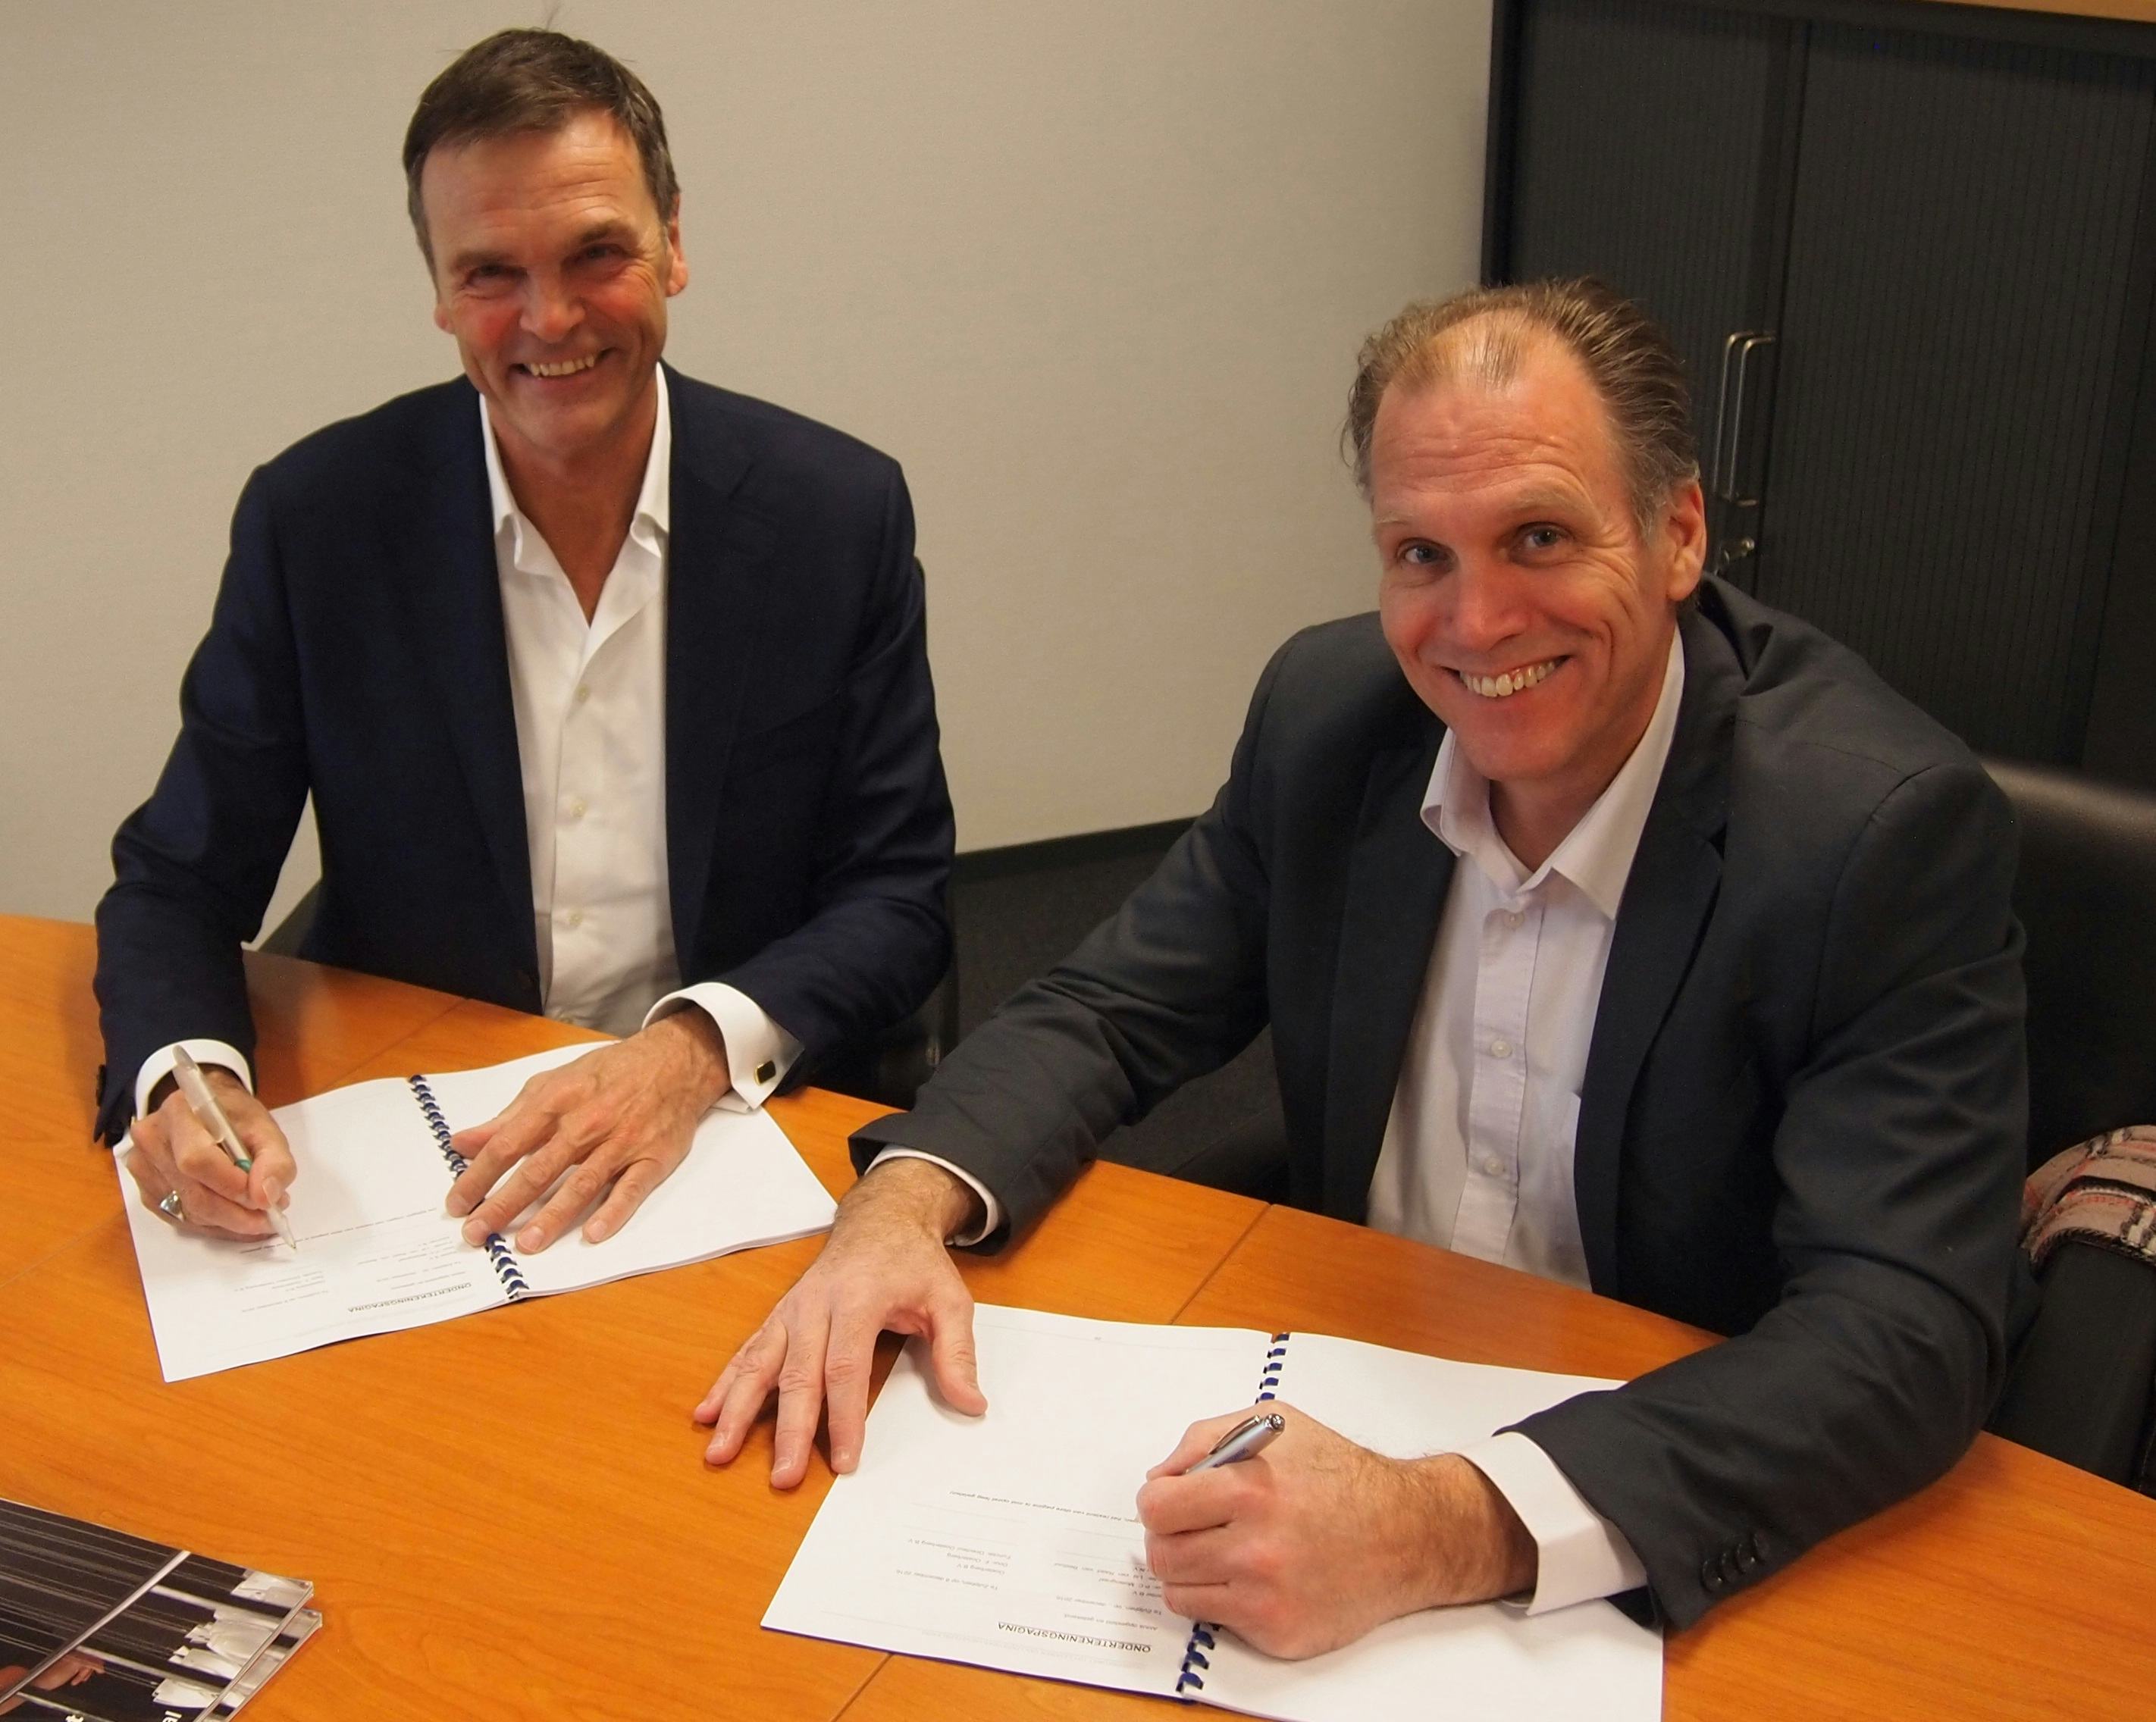 Flip Oosterberg (foto links) en Henk Kluytmans (Kenter) zetten begin december de handtekeningen onder een meerjarencontract. De overeenkomst vormt voor Oosterberg de opmaat om meer logistiek dienstverleningsactiviteiten te verrichten aan derden.